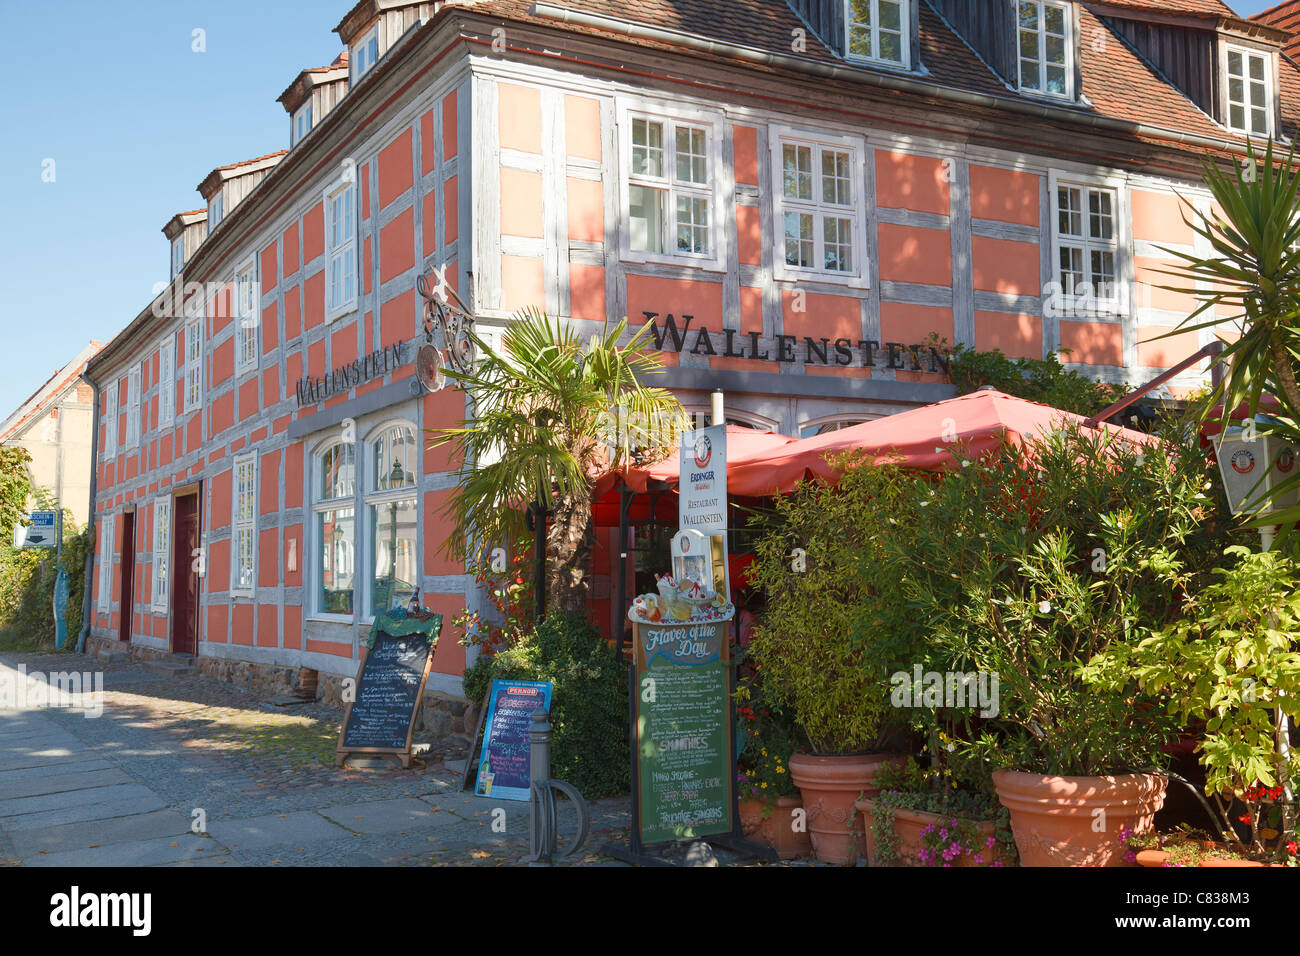 Restaurant Wallenstein, cadre en bois, bâtiment Angermuende, Brandebourg, Allemagne Banque D'Images